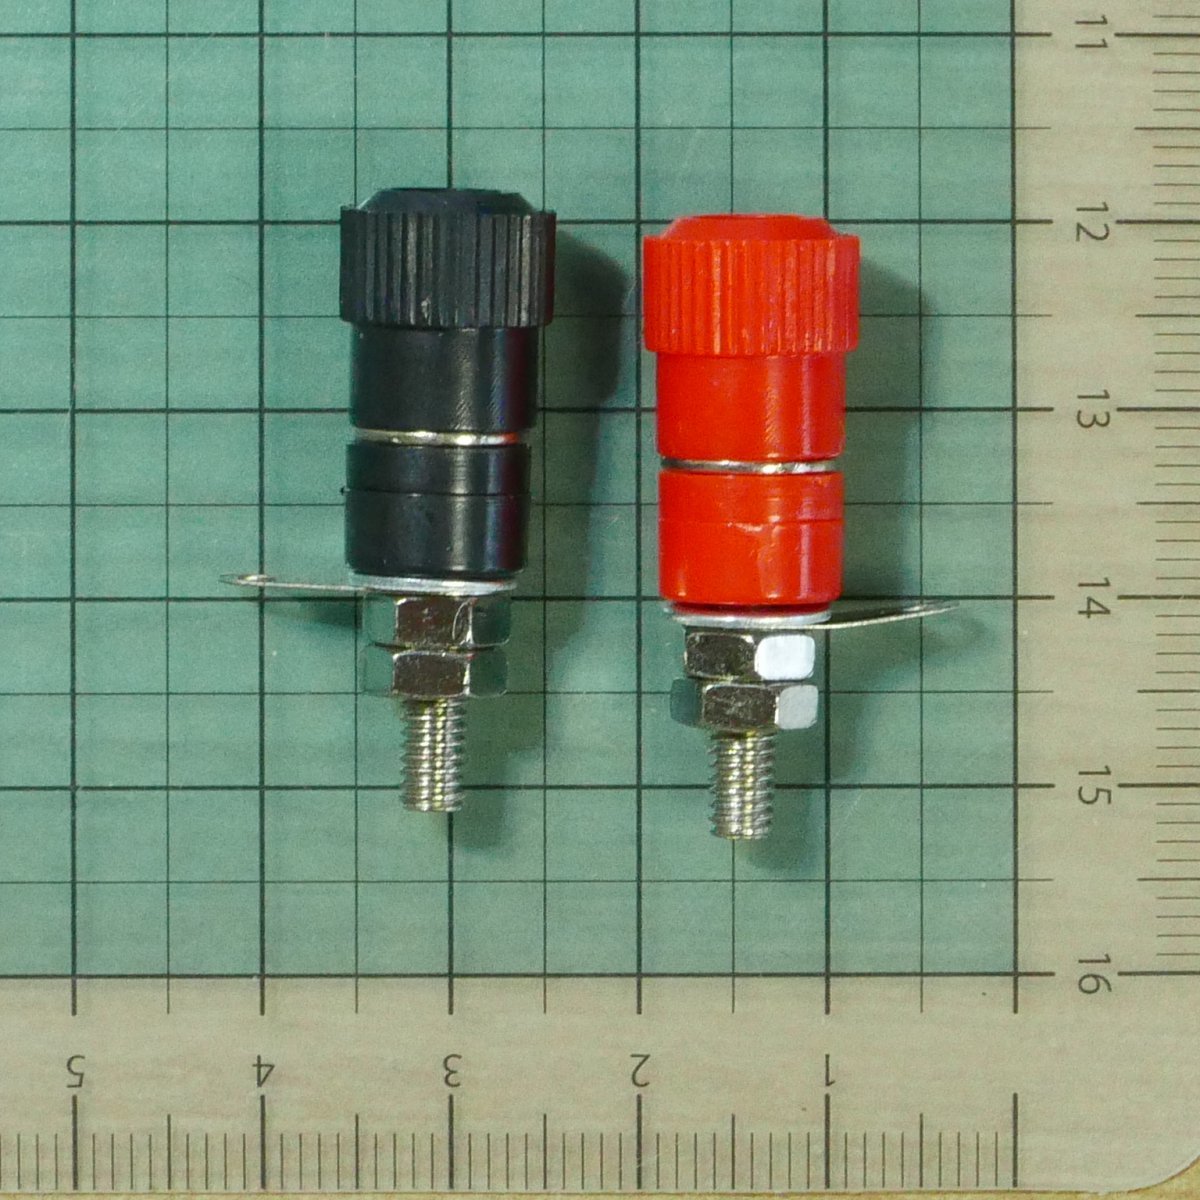 ターミナル 赤黒セット パネル側径7.5mm (径4mmバナナプラグ差込可 実験用端子 ラグ端子 電源 スピーカー)_画像3